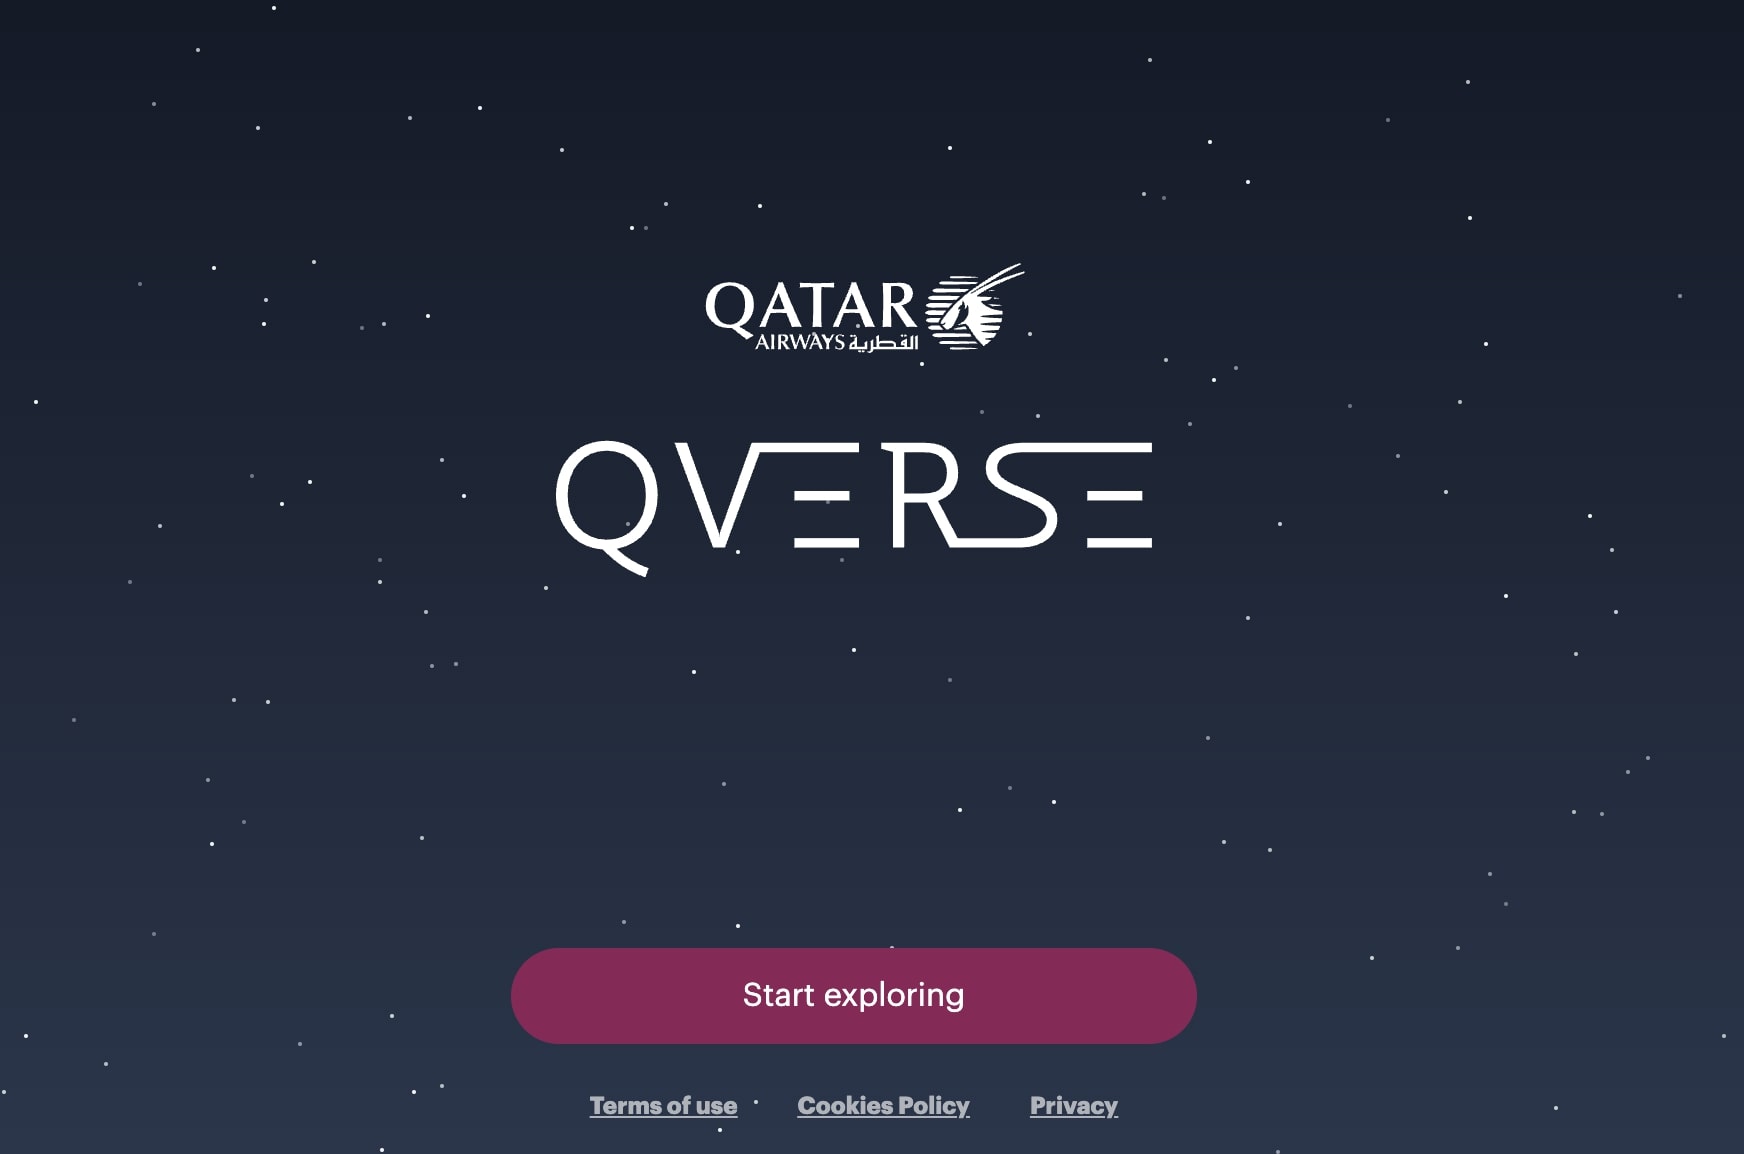 Qatar Airways website home page